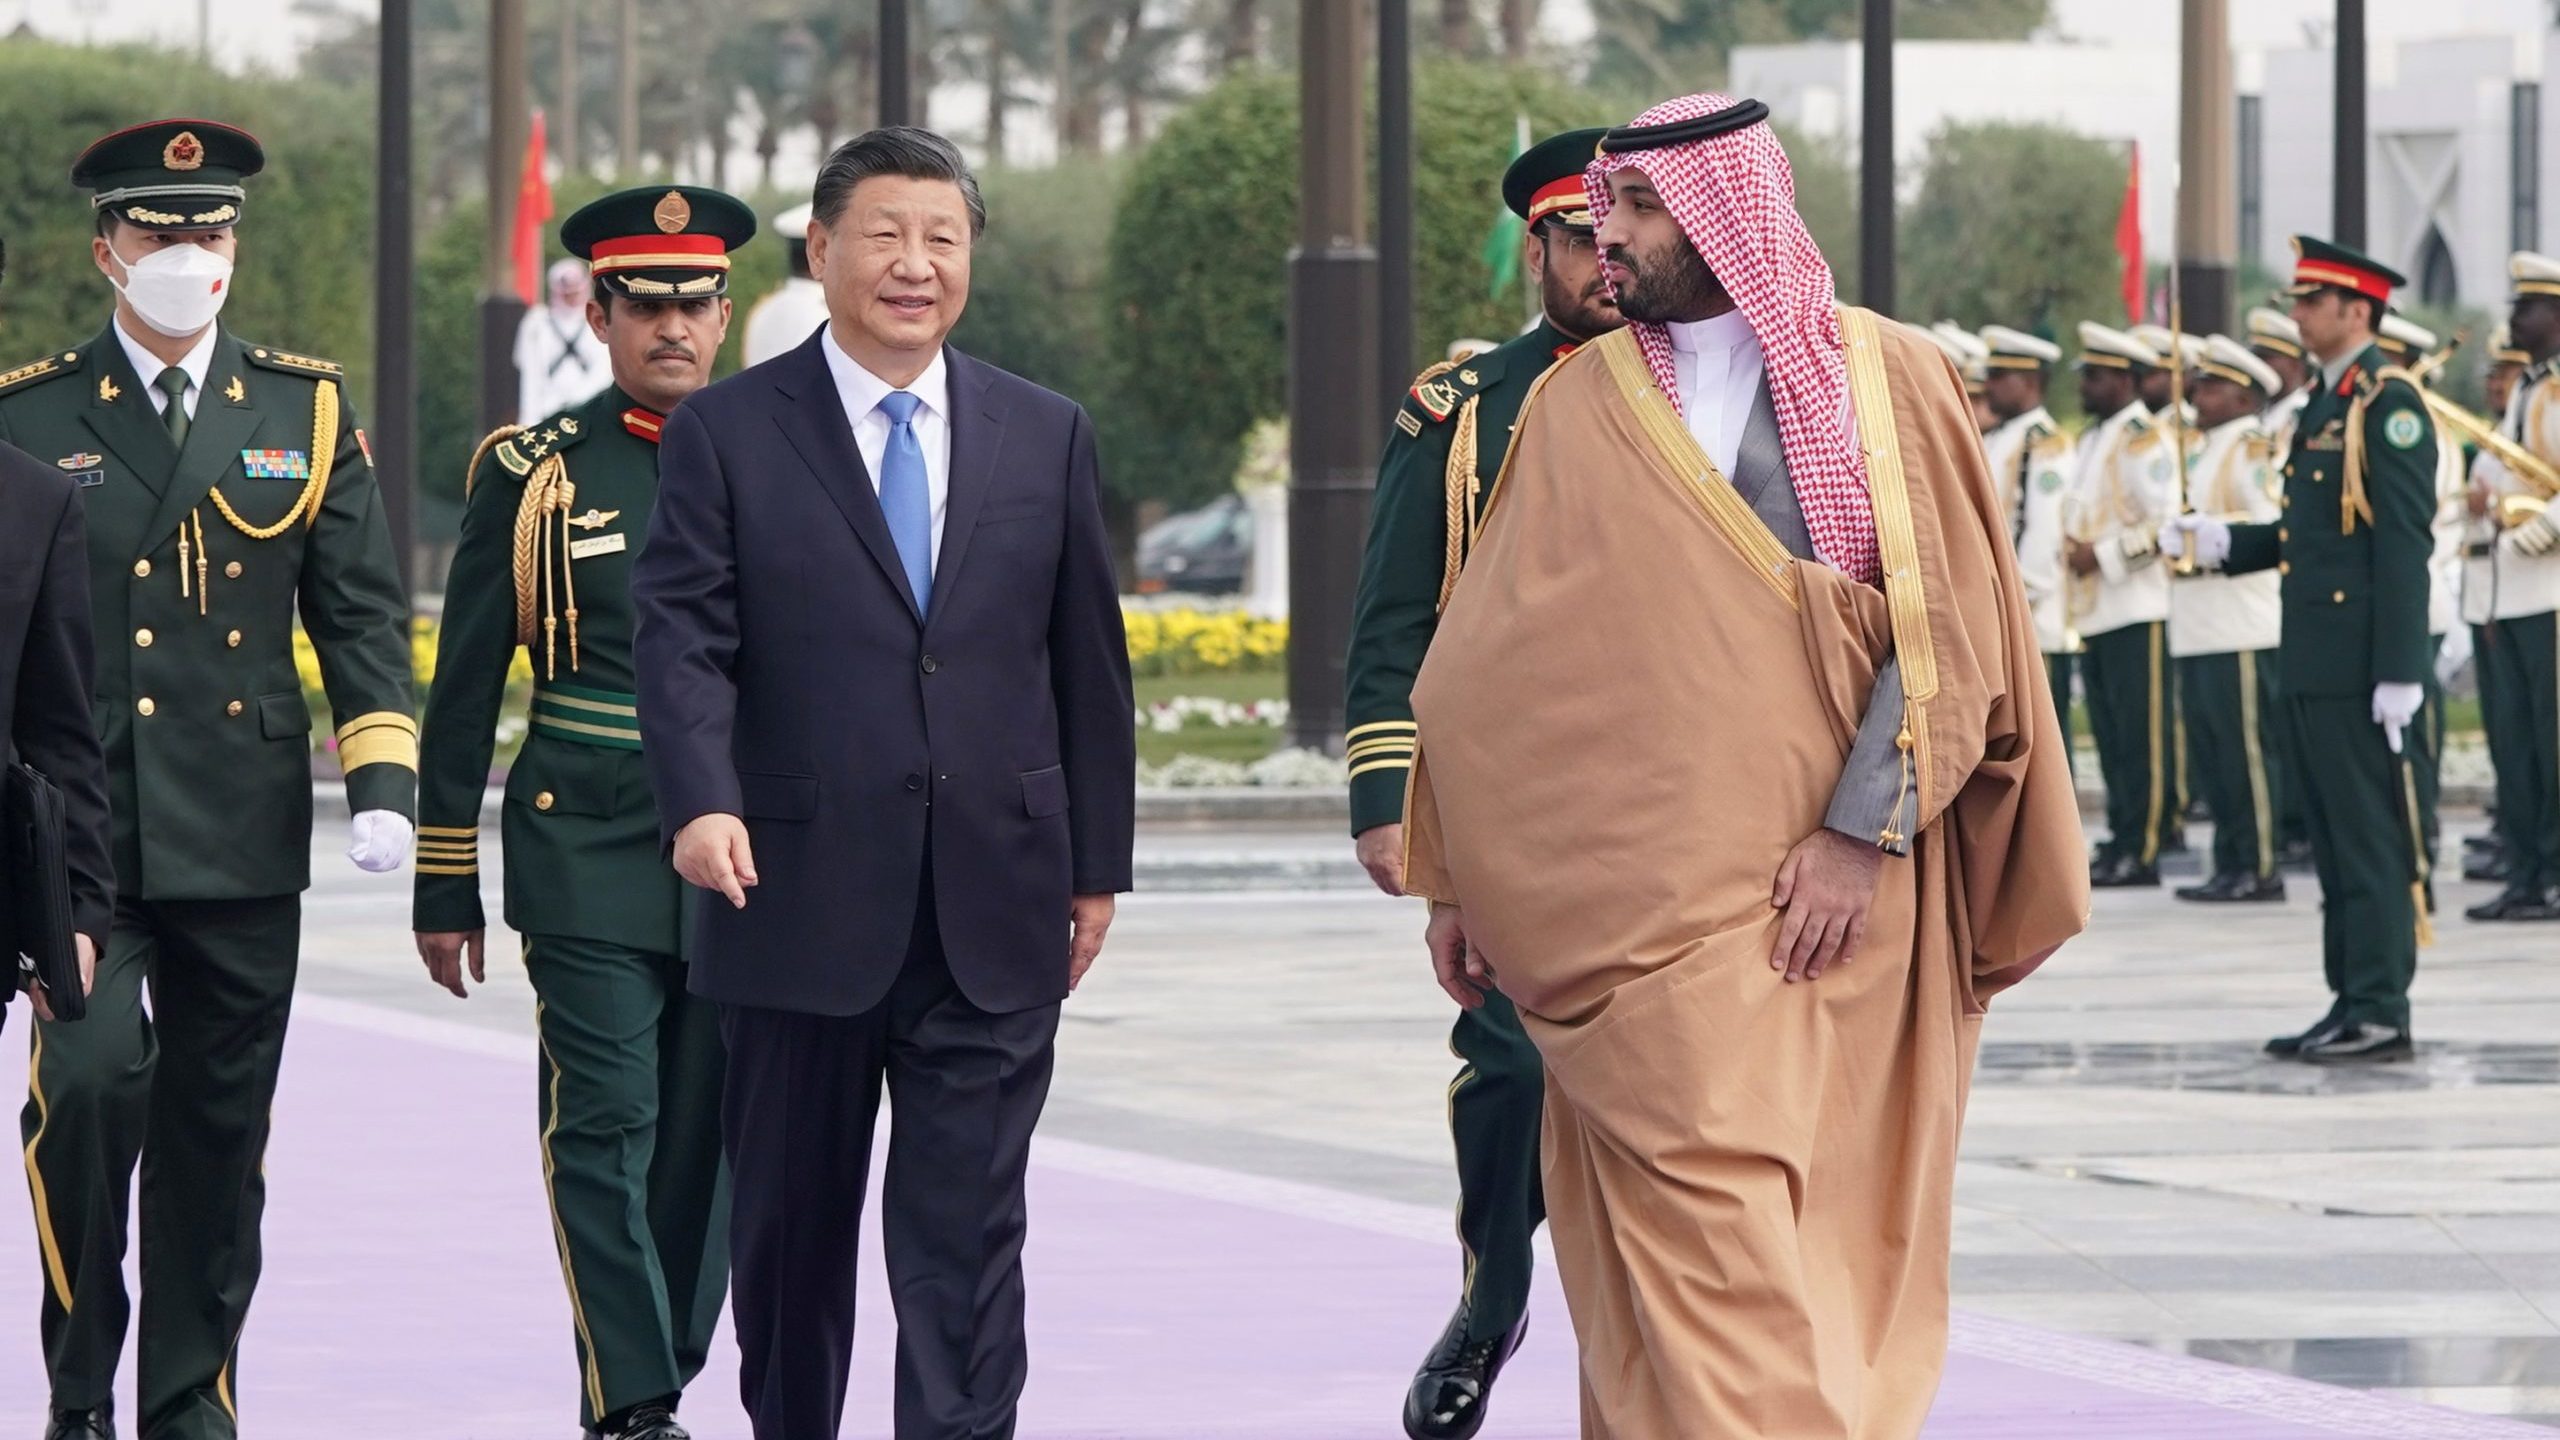 Saudi Arabia Hosts Arab Leaders at China Summit on Cooperation - The ...